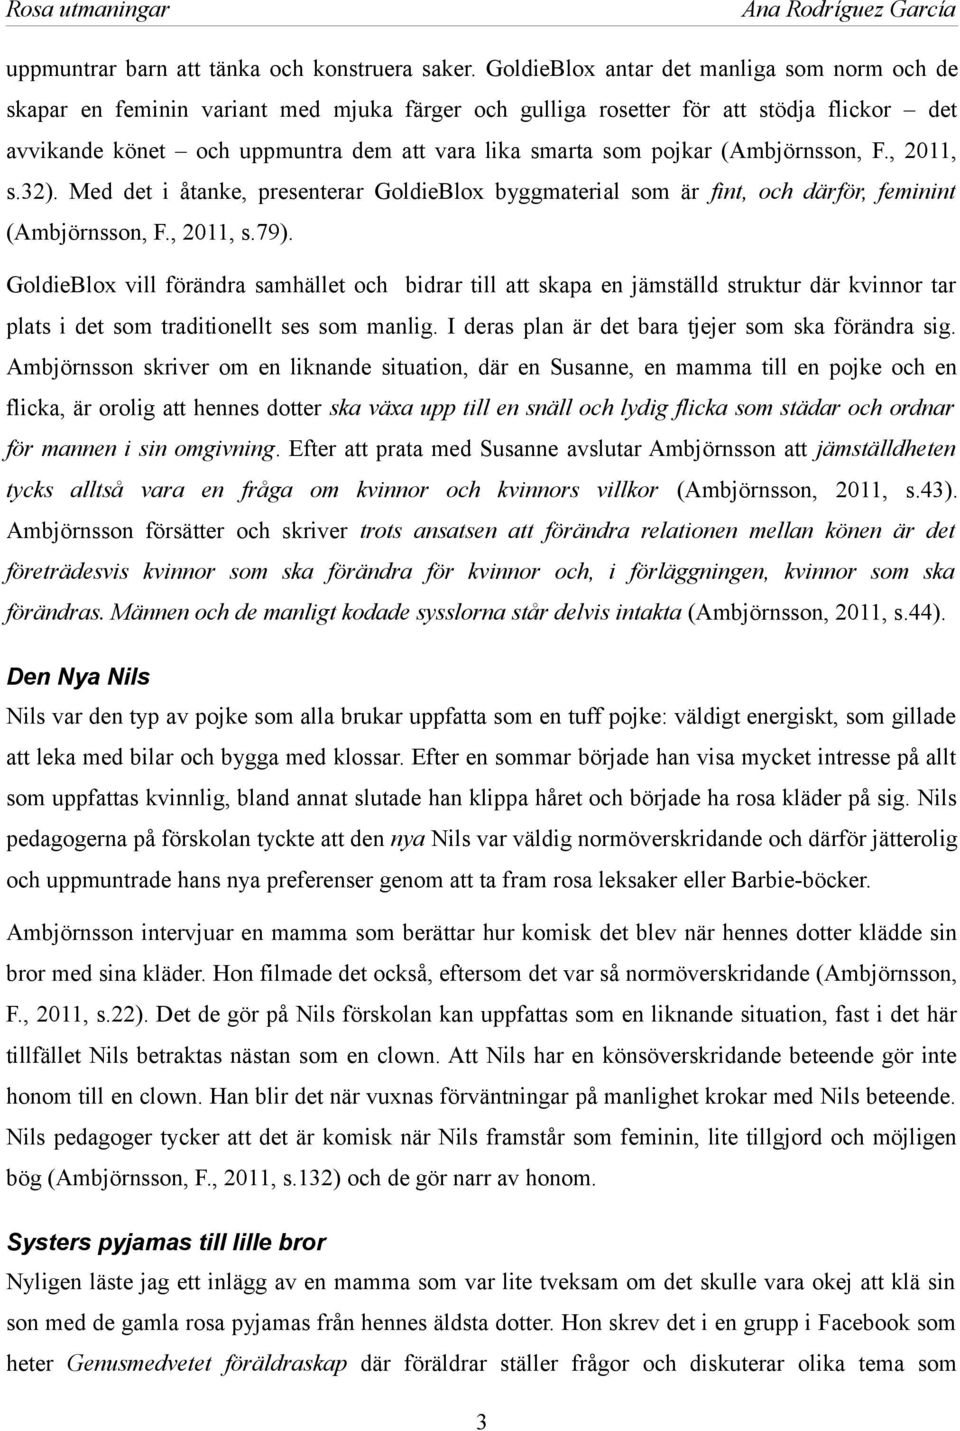 pojkar (Ambjörnsson, F., 2011, s.32). Med det i åtanke, presenterar GoldieBlox byggmaterial som är fint, och därför, feminint (Ambjörnsson, F., 2011, s.79).